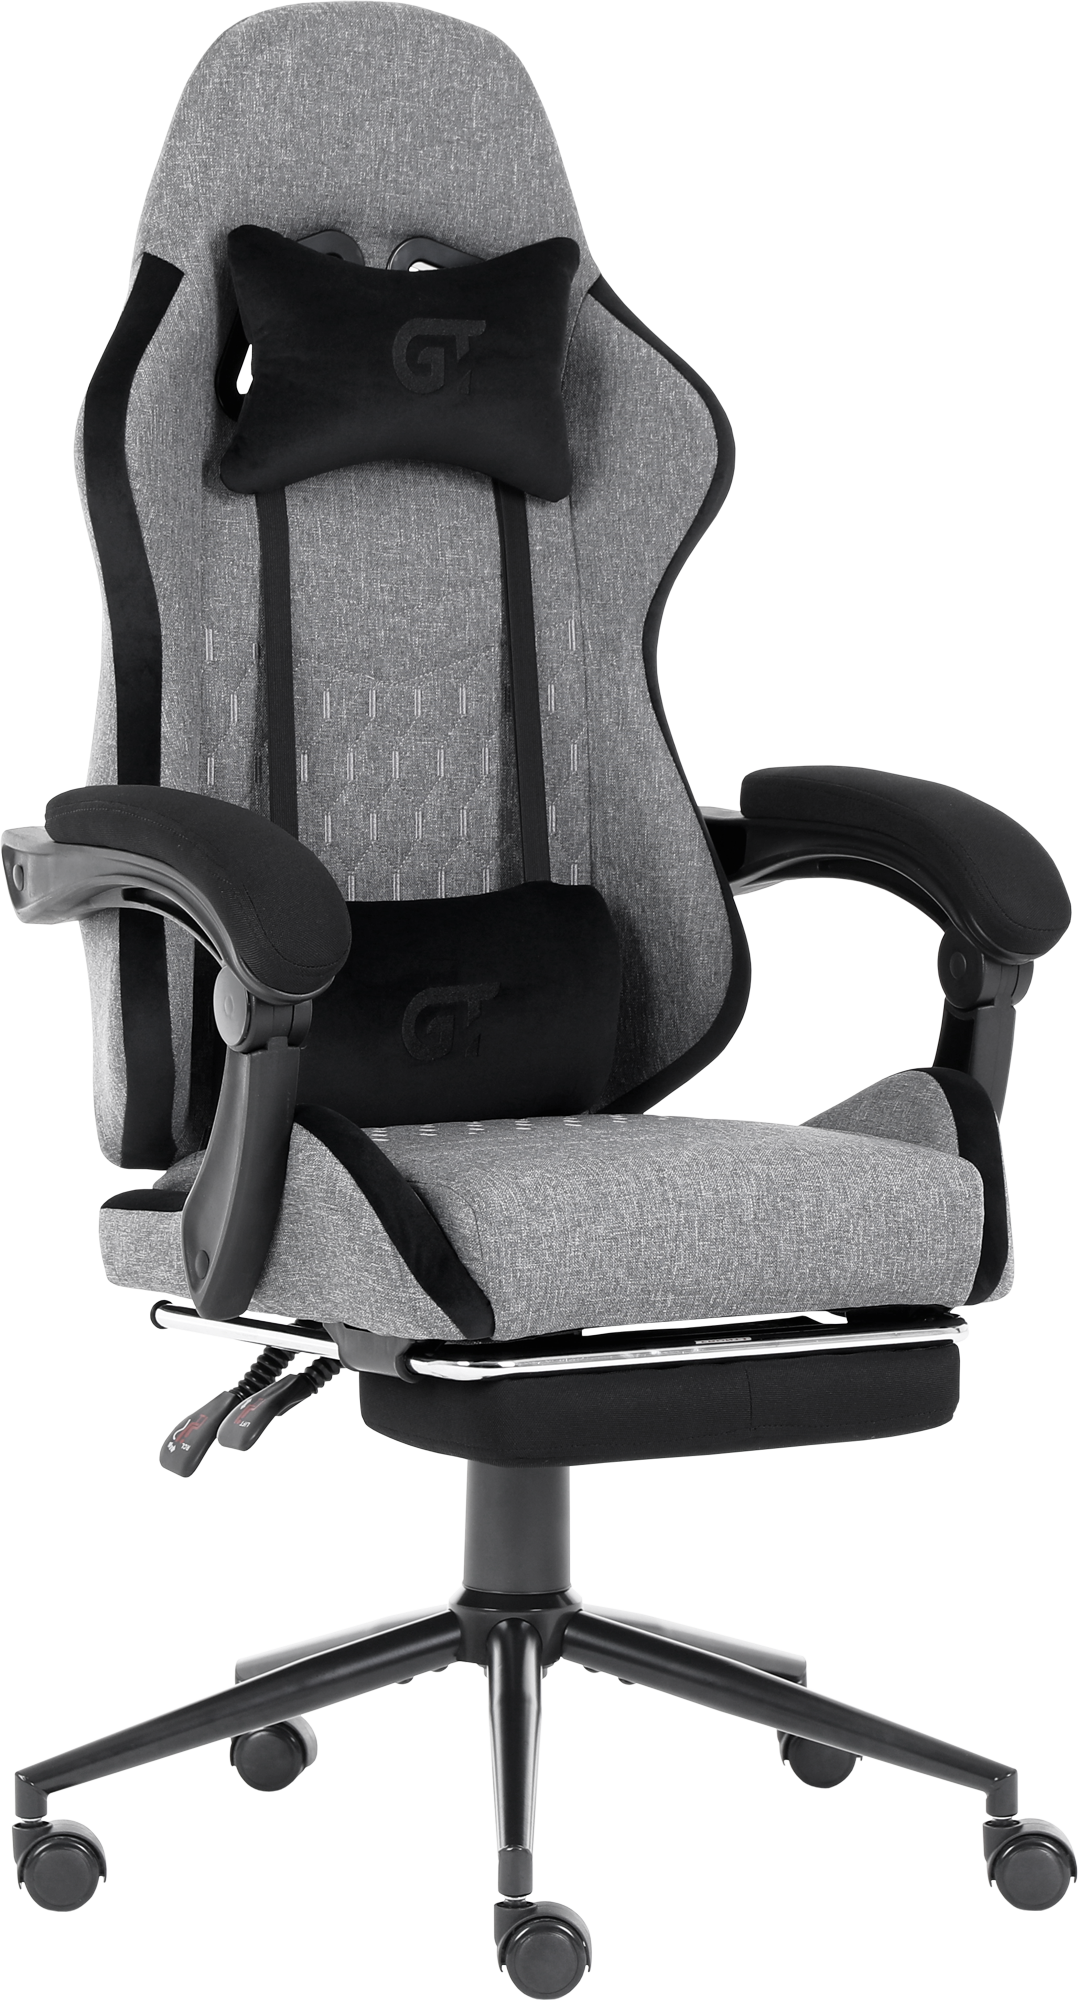 Геймерское кресло GT Racer серое с черным (X-2324 Fabric Gray/Black Suede) - фото 3